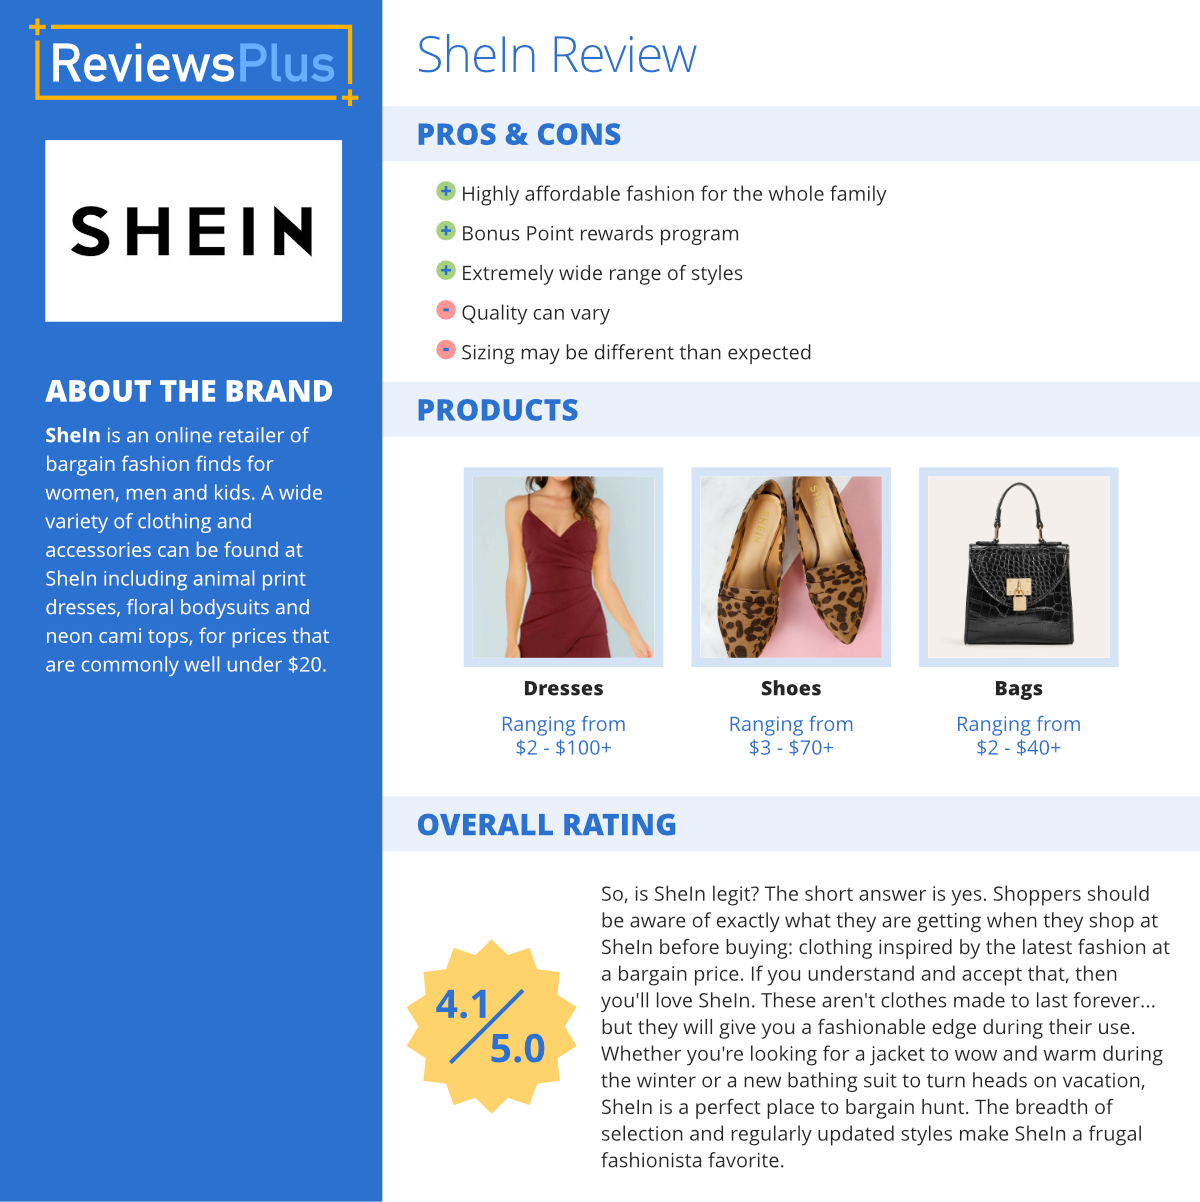 shein dresses - braandthings.com